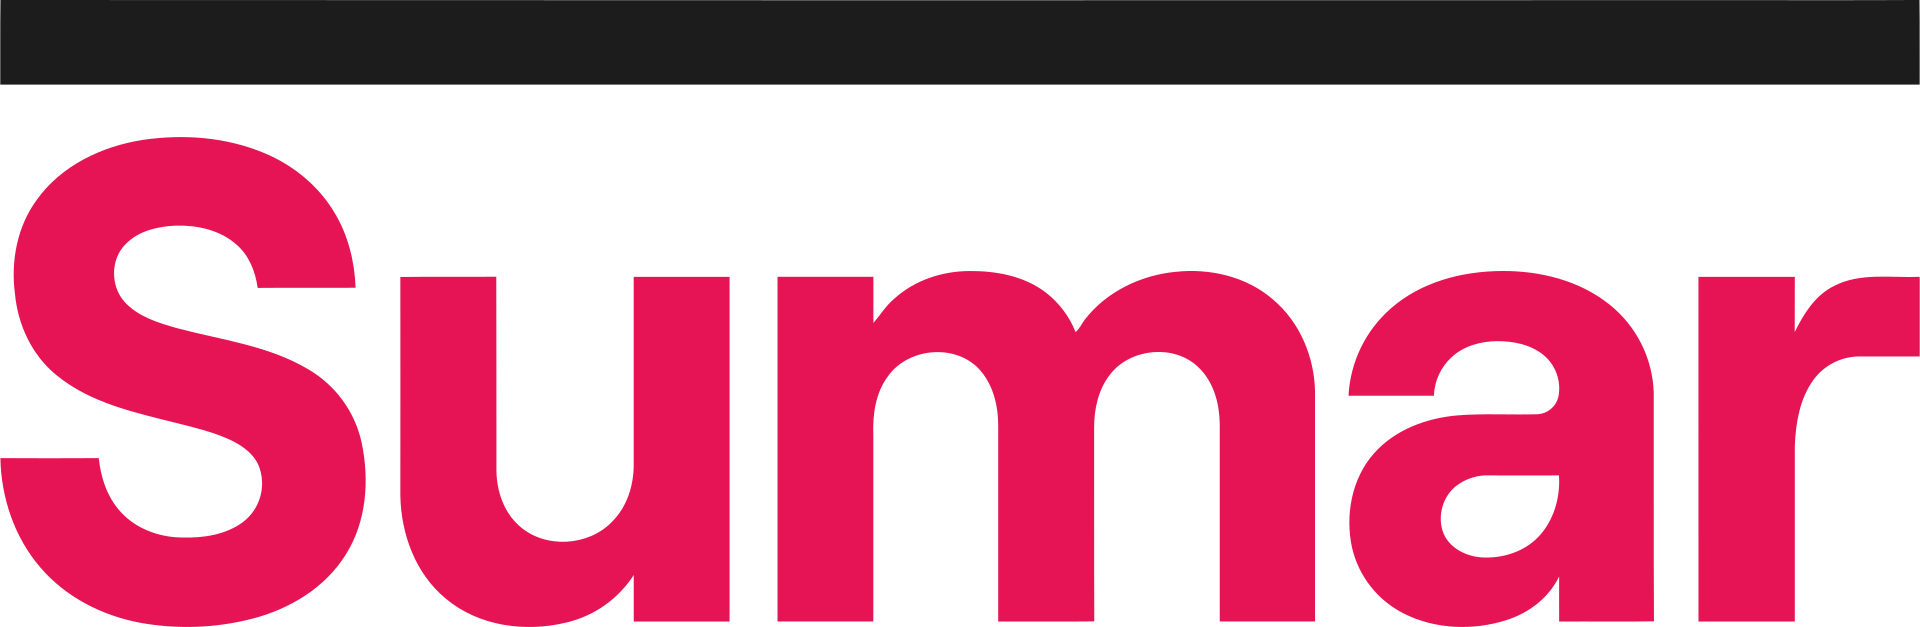 Logotipo de la formación electoral SUMAR (SUMAR)